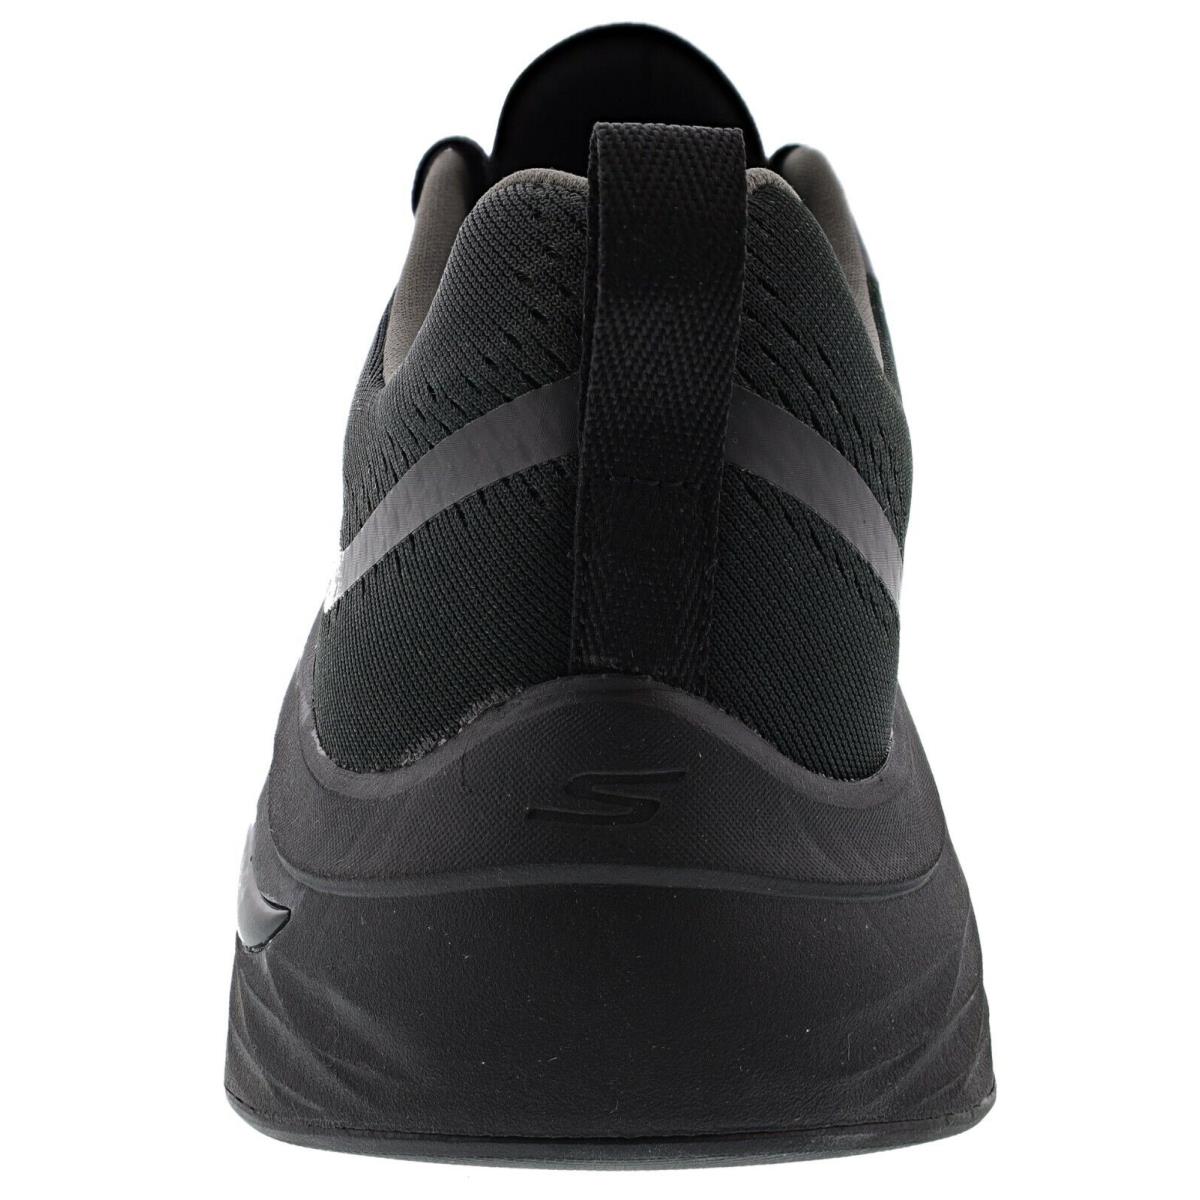 Skechers shoes Arch Fit - BLACK / BLACK 2